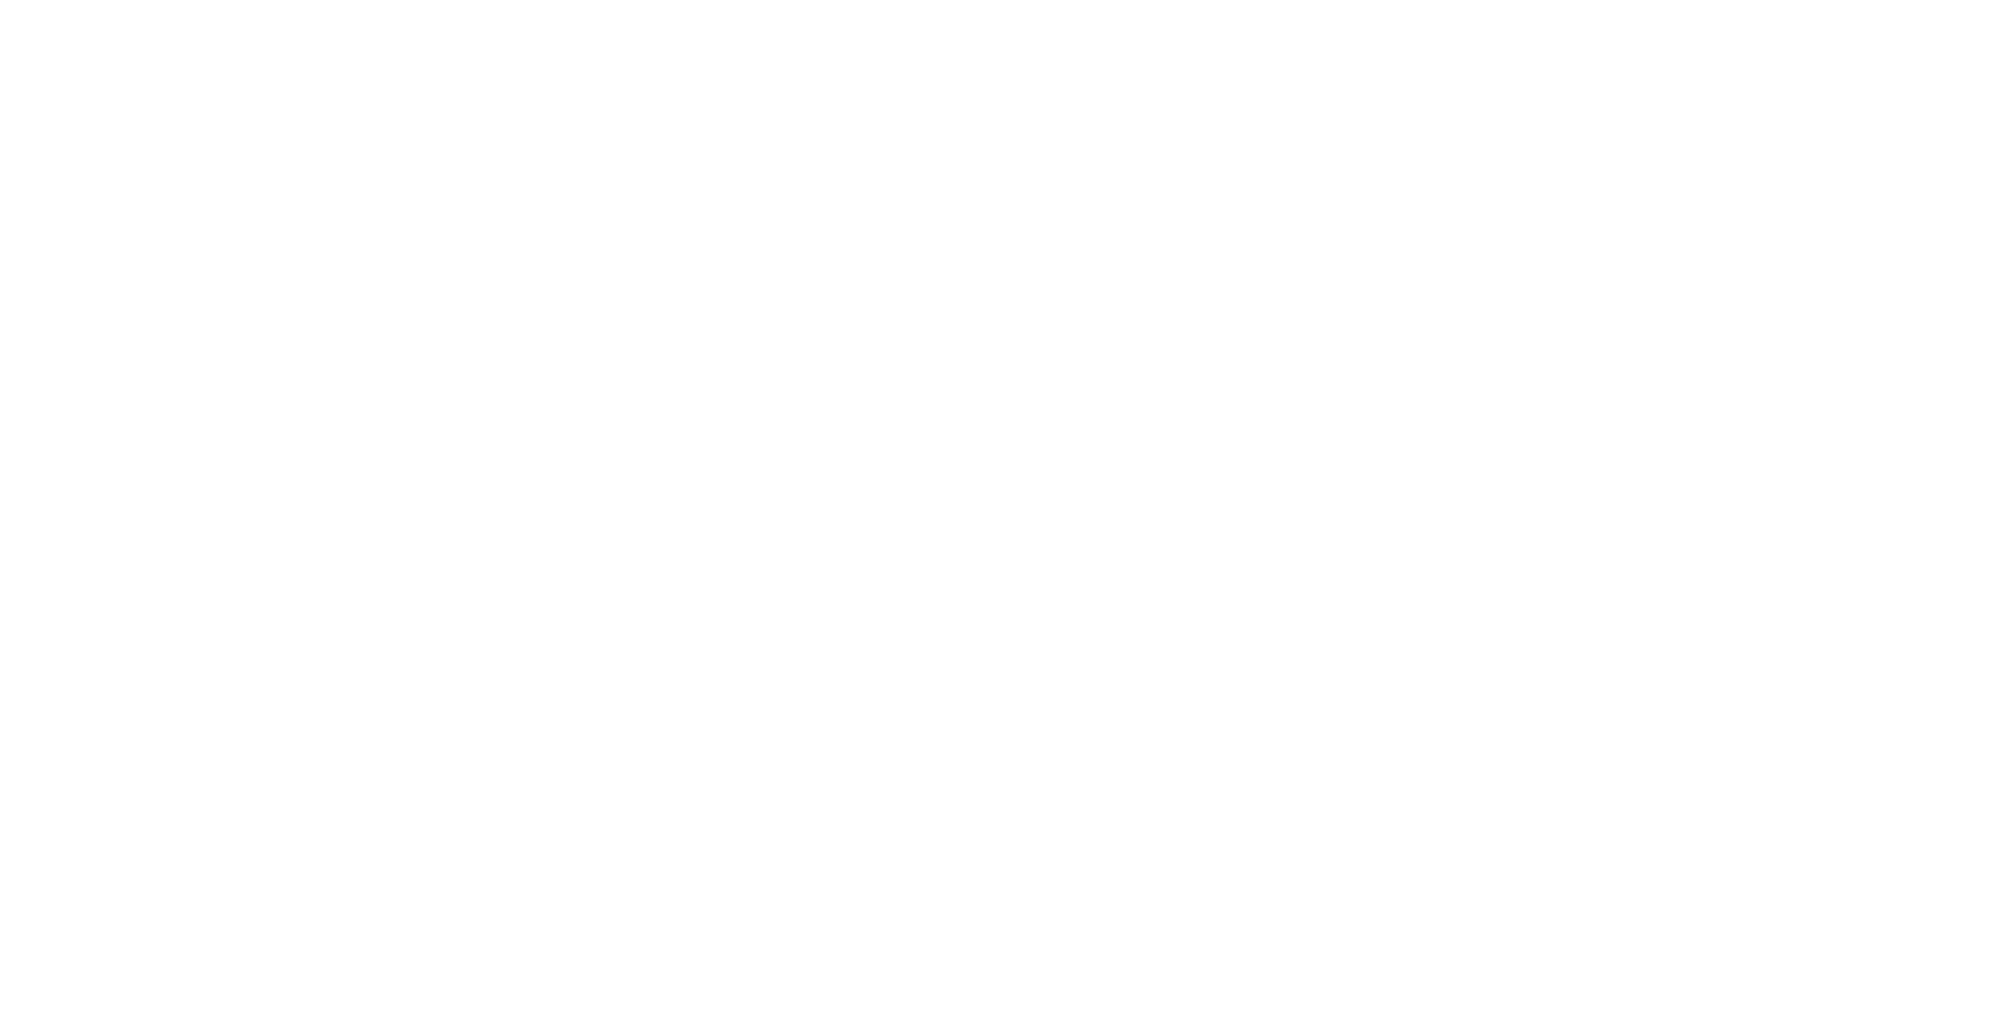 Razziphoto